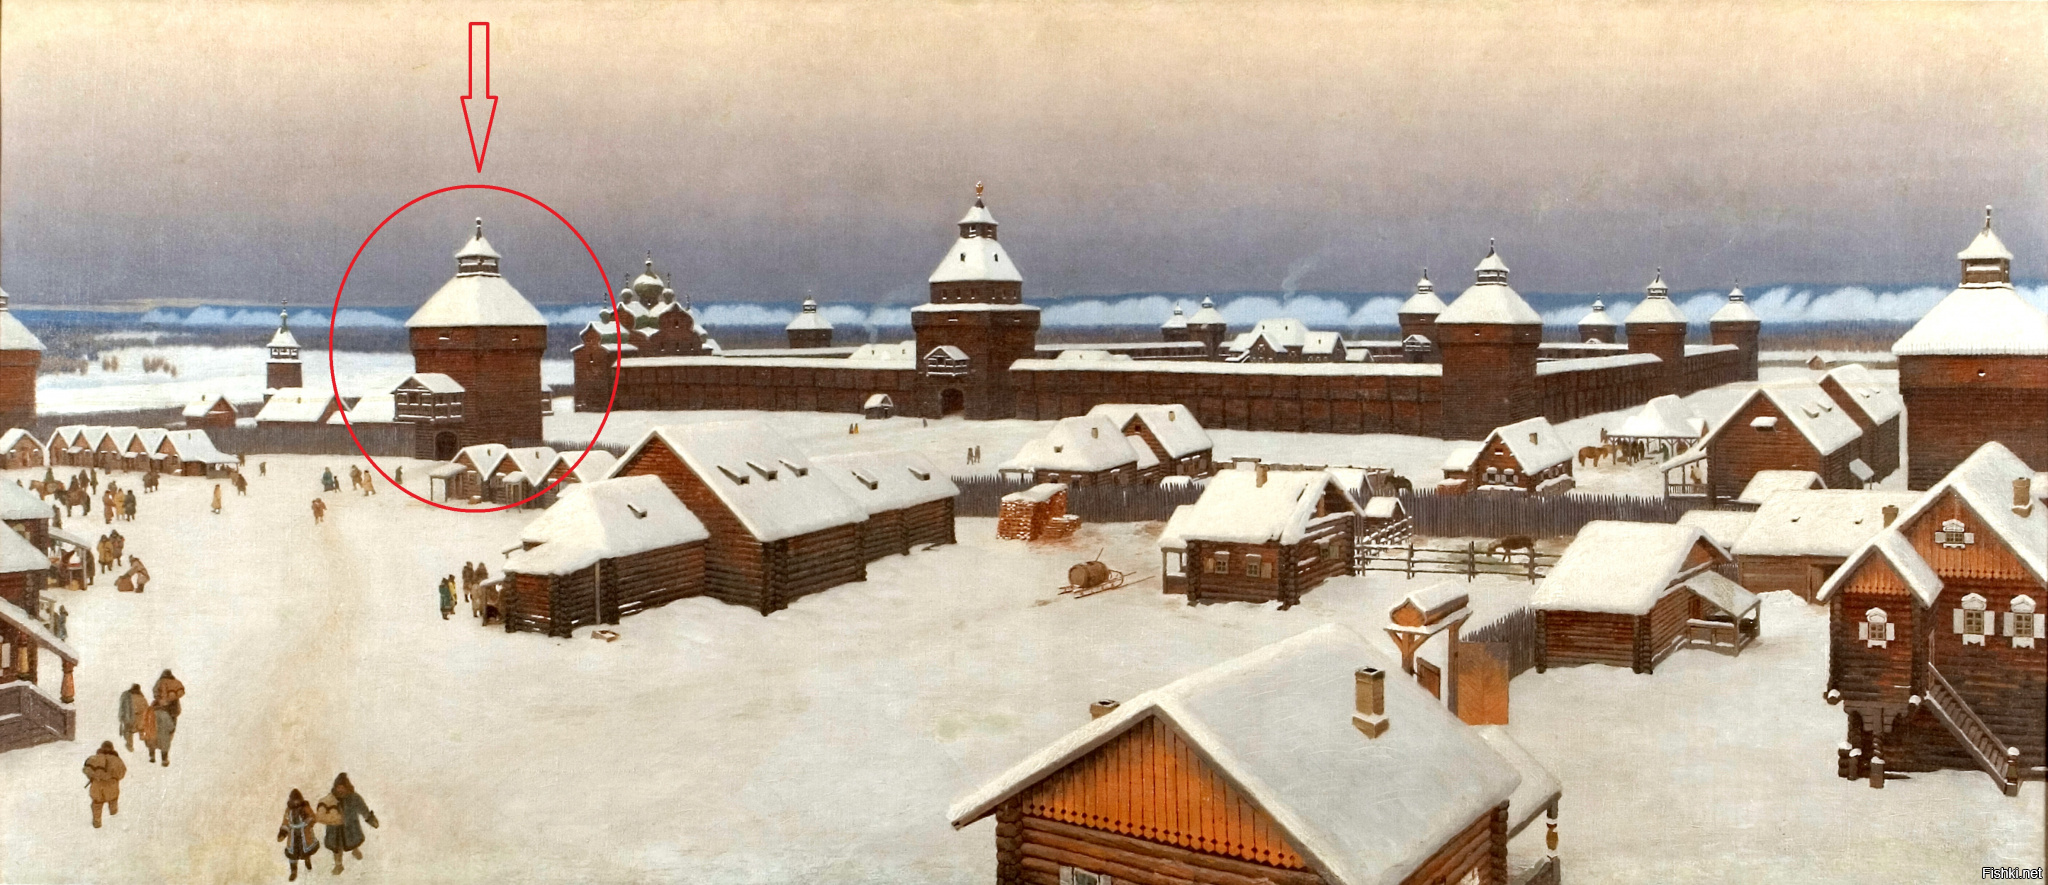 Якутский острог (сгоревший в 2002 году в результате детской шалости) считался старейшей деревянной крепостью на фото 2002 год и картина Ивана Попова "Якутск в конце XVII столетия "